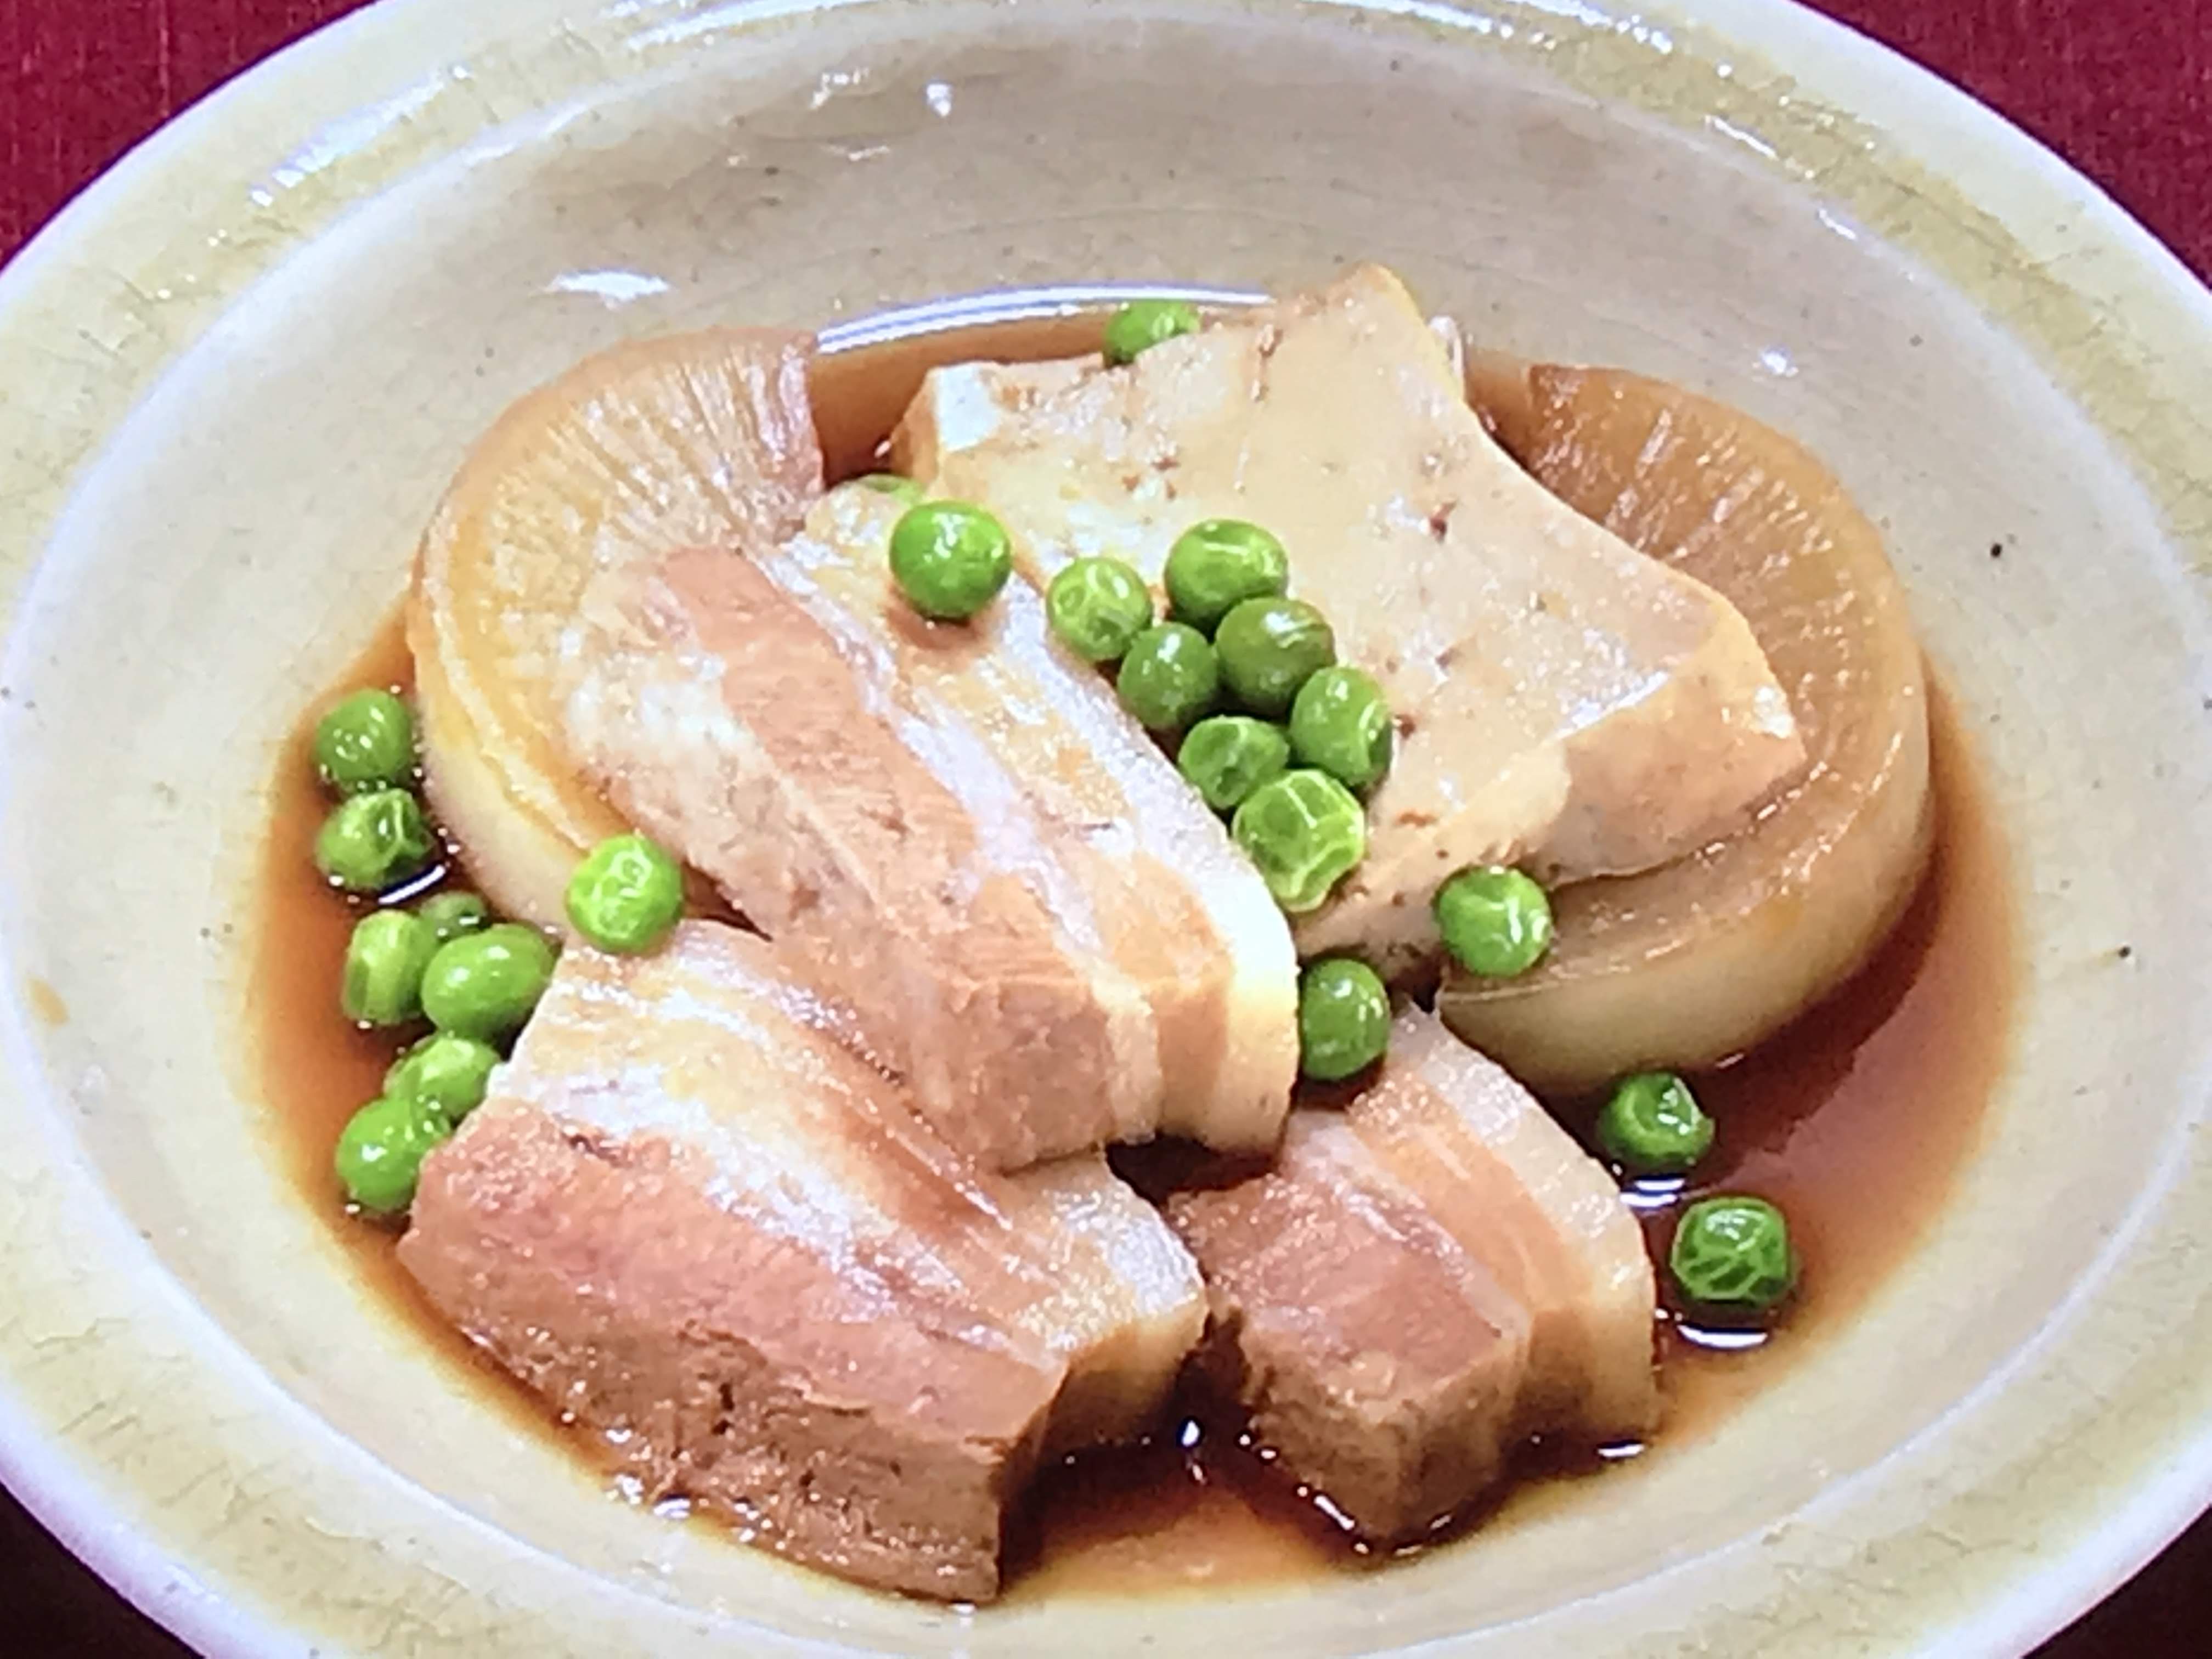 NHKきょうの料理はゆで豚・おからのリエット・豚バラ肉の煮つけレシピ！土井善晴 | きょうの料理 レシピ研究ブログ